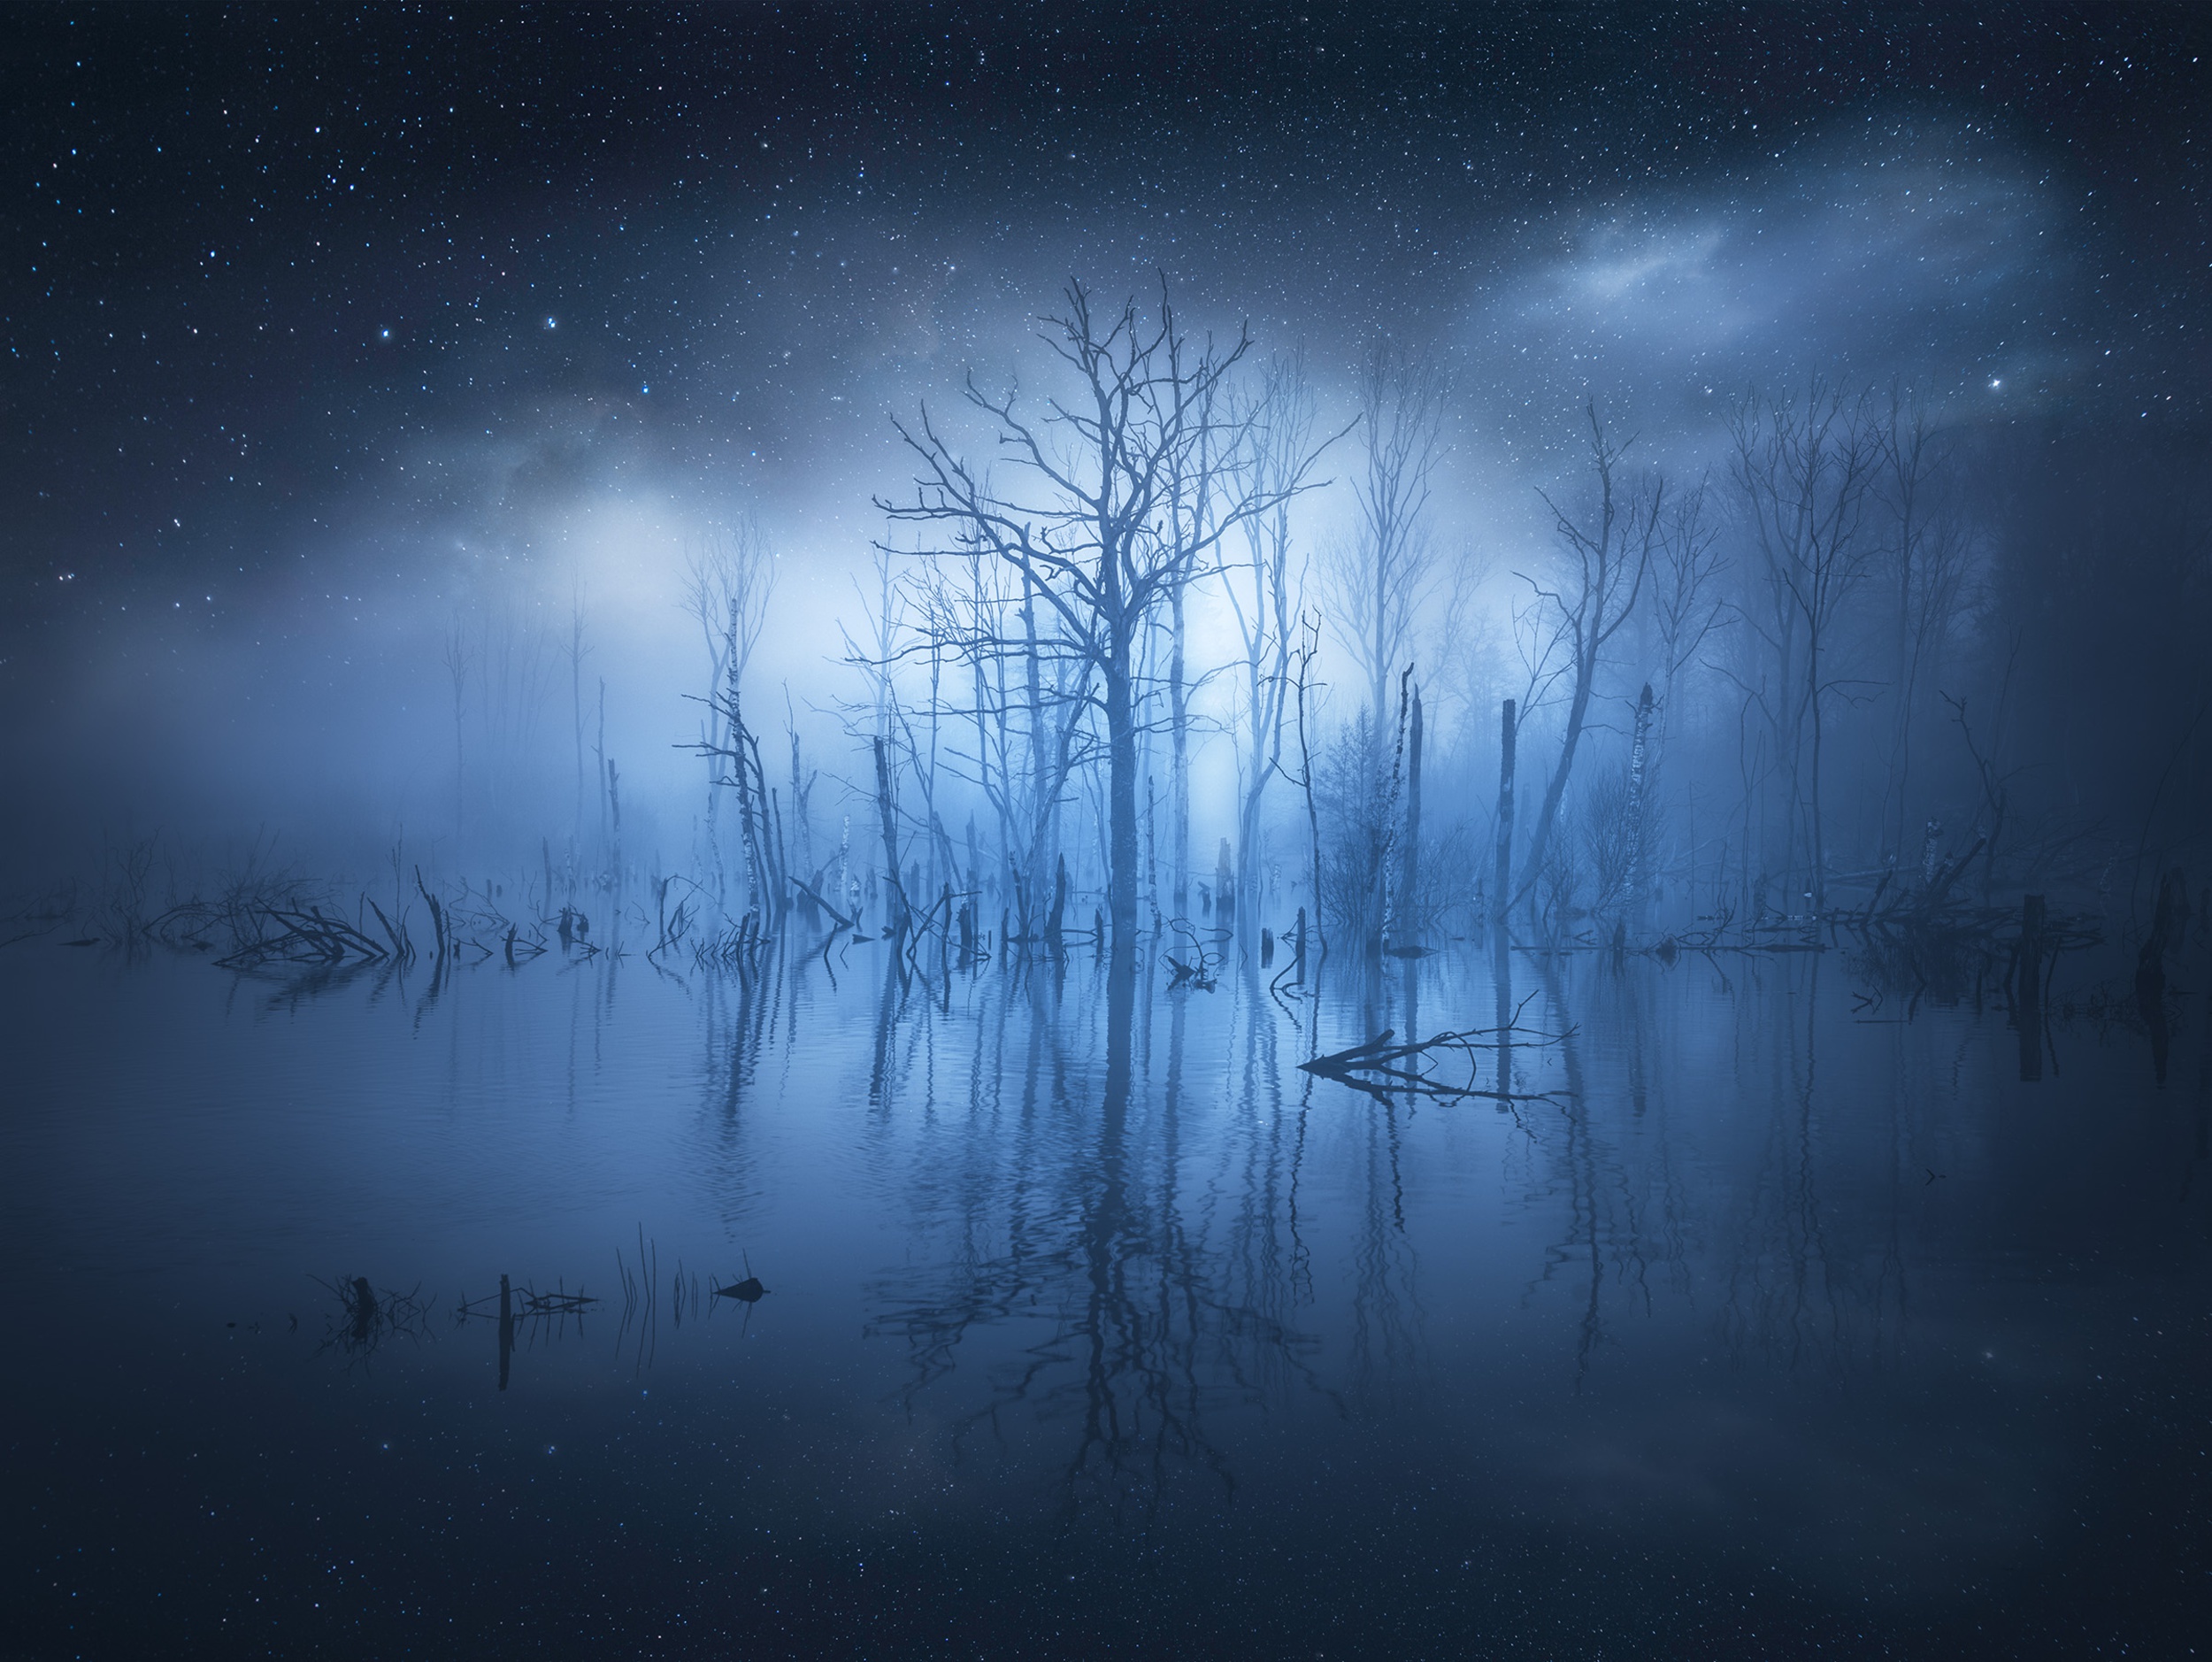 Скачать обои бесплатно Вода, Звезды, Ночь, Отражение, Дерево, Туман, Земля/природа картинка на рабочий стол ПК